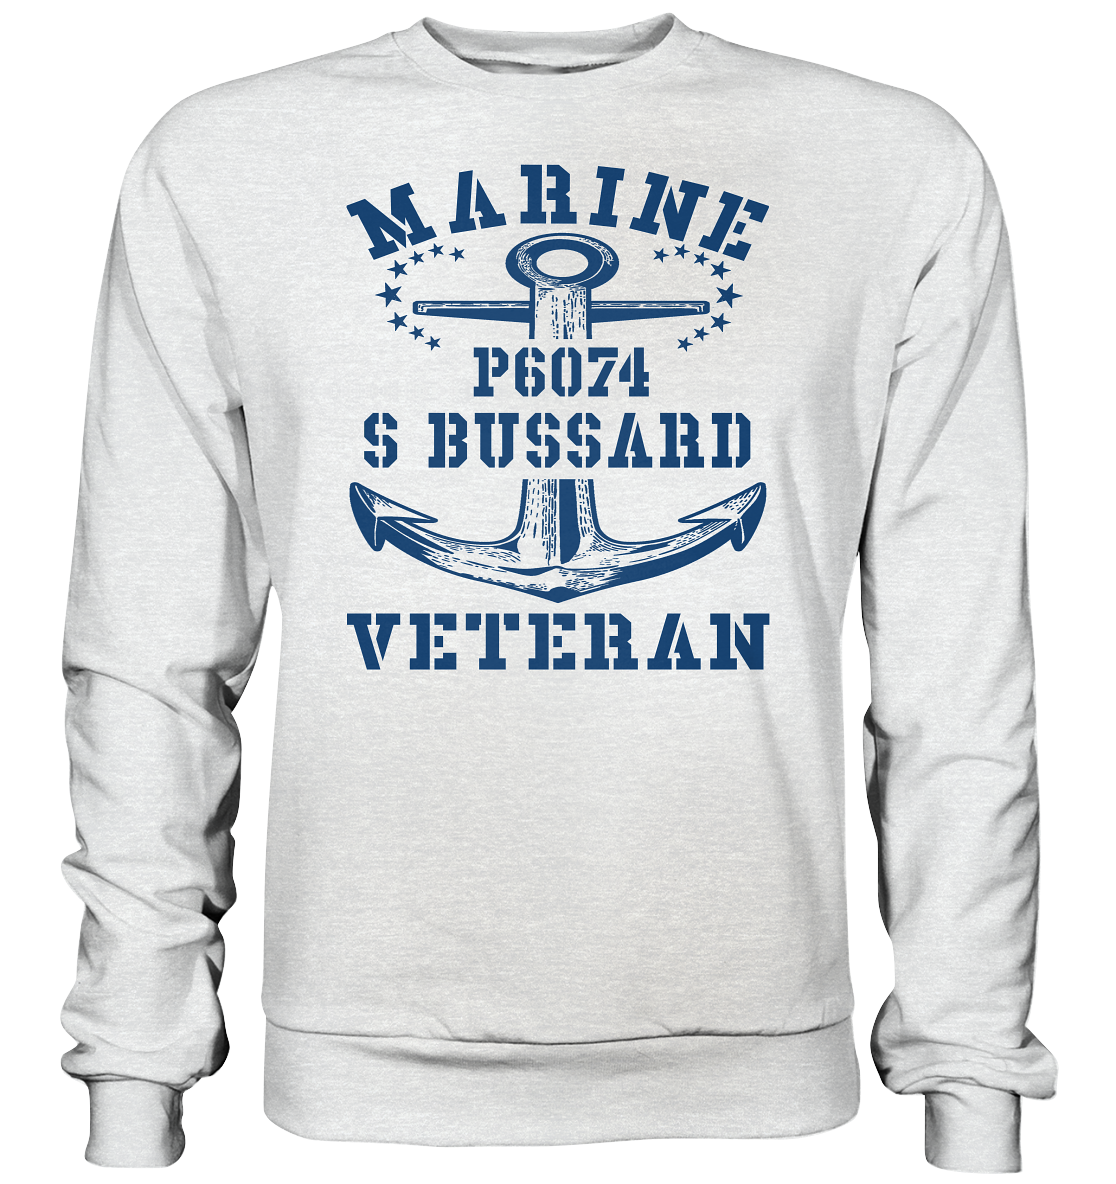 P6074 S BUSSARD Marine Veteran - Premium Sweatshirt